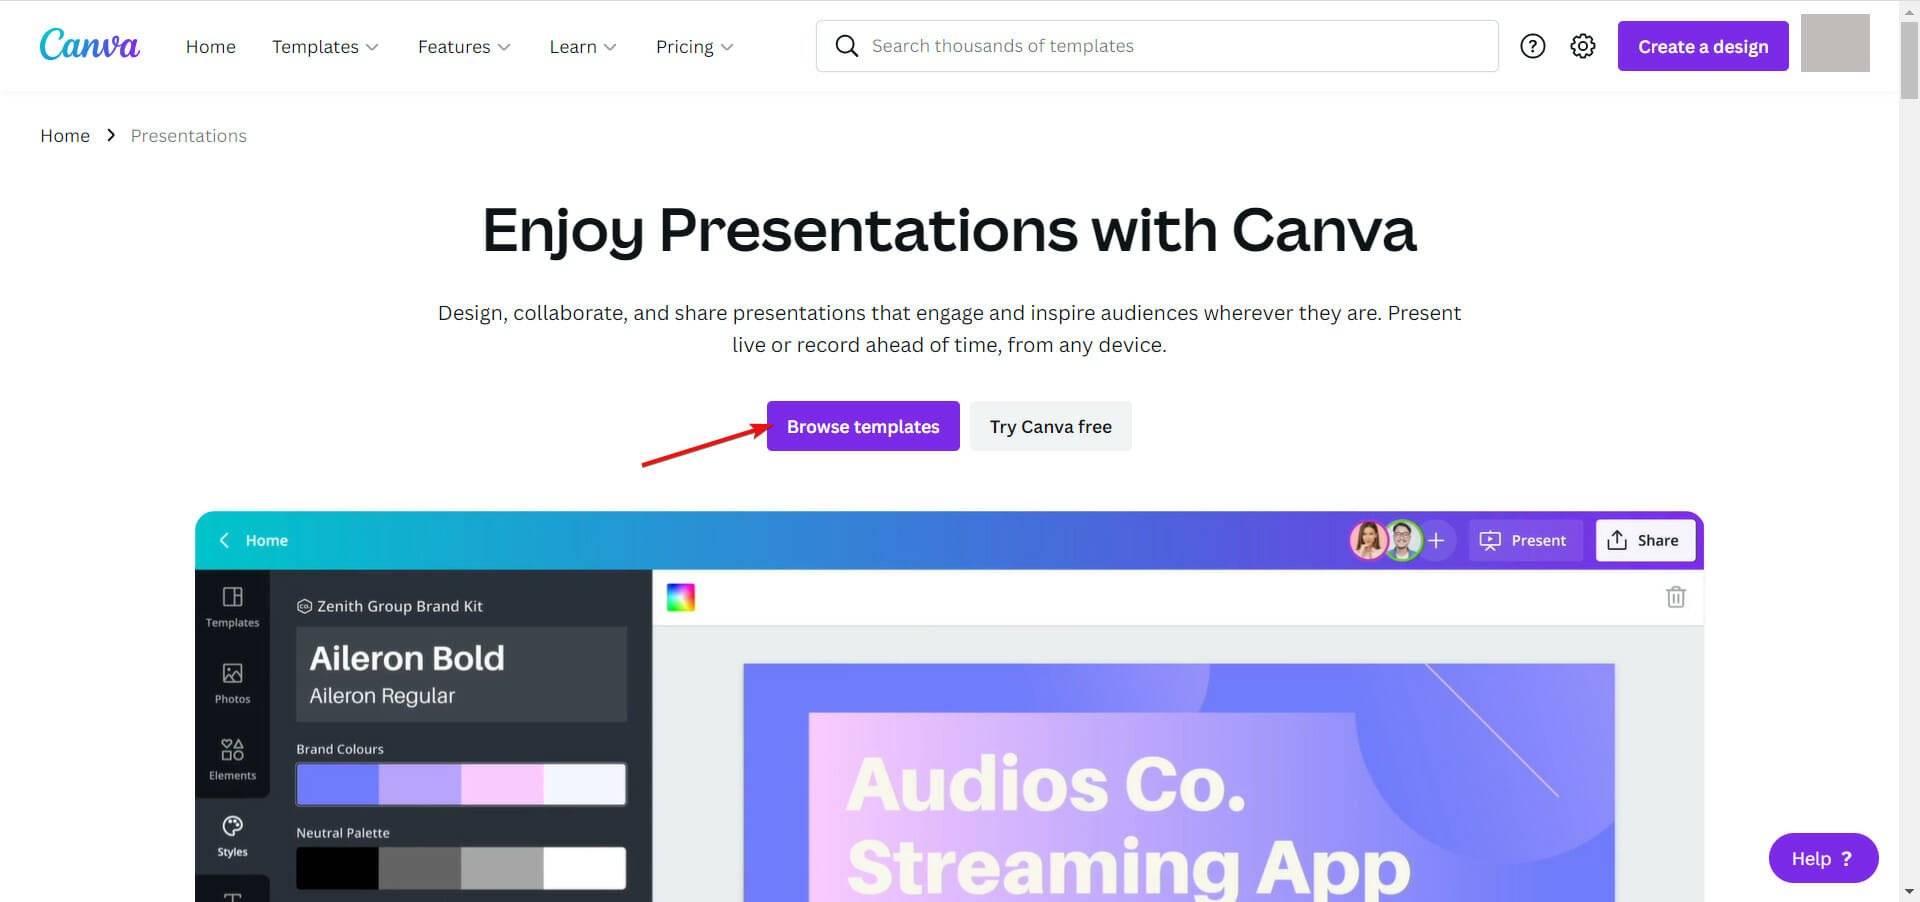 canva-presentations